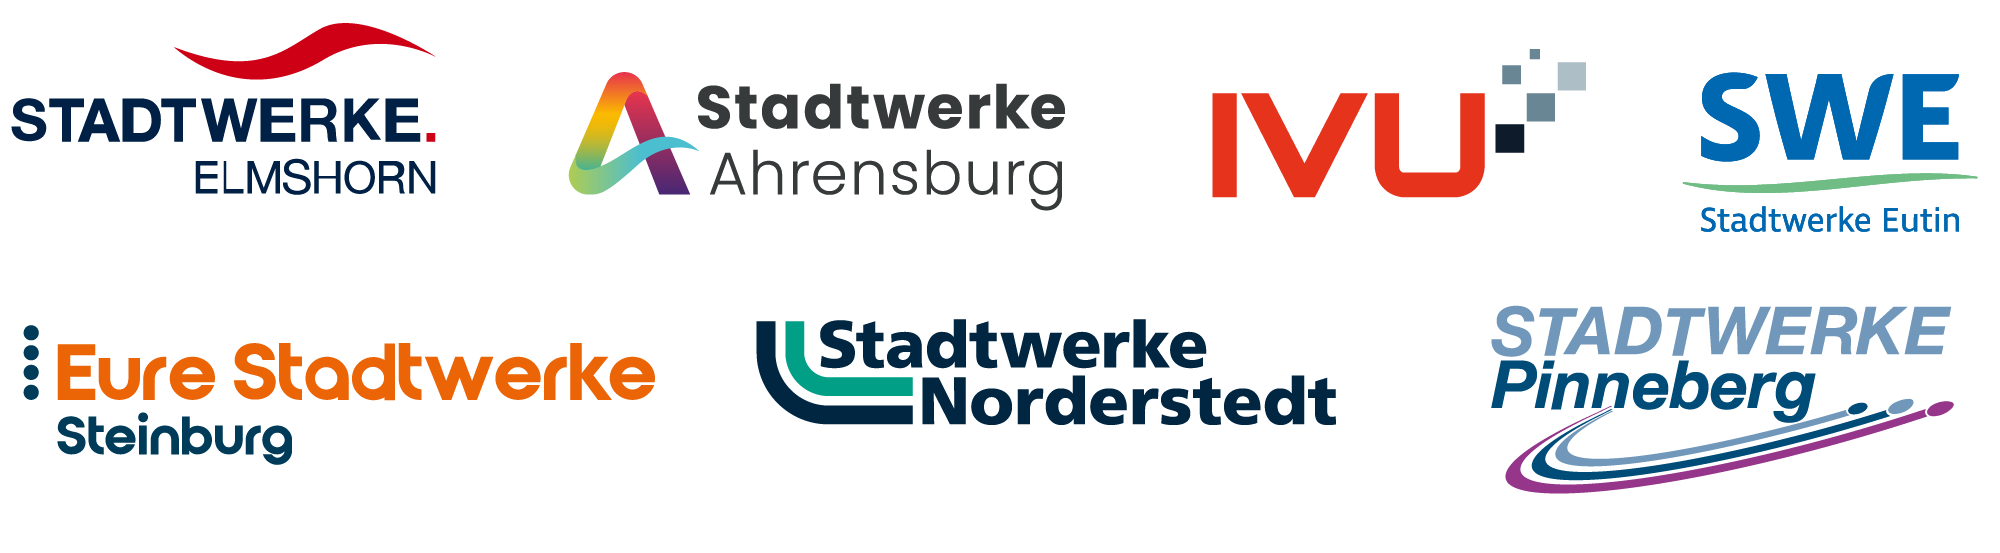 Logoband Stadtwerke